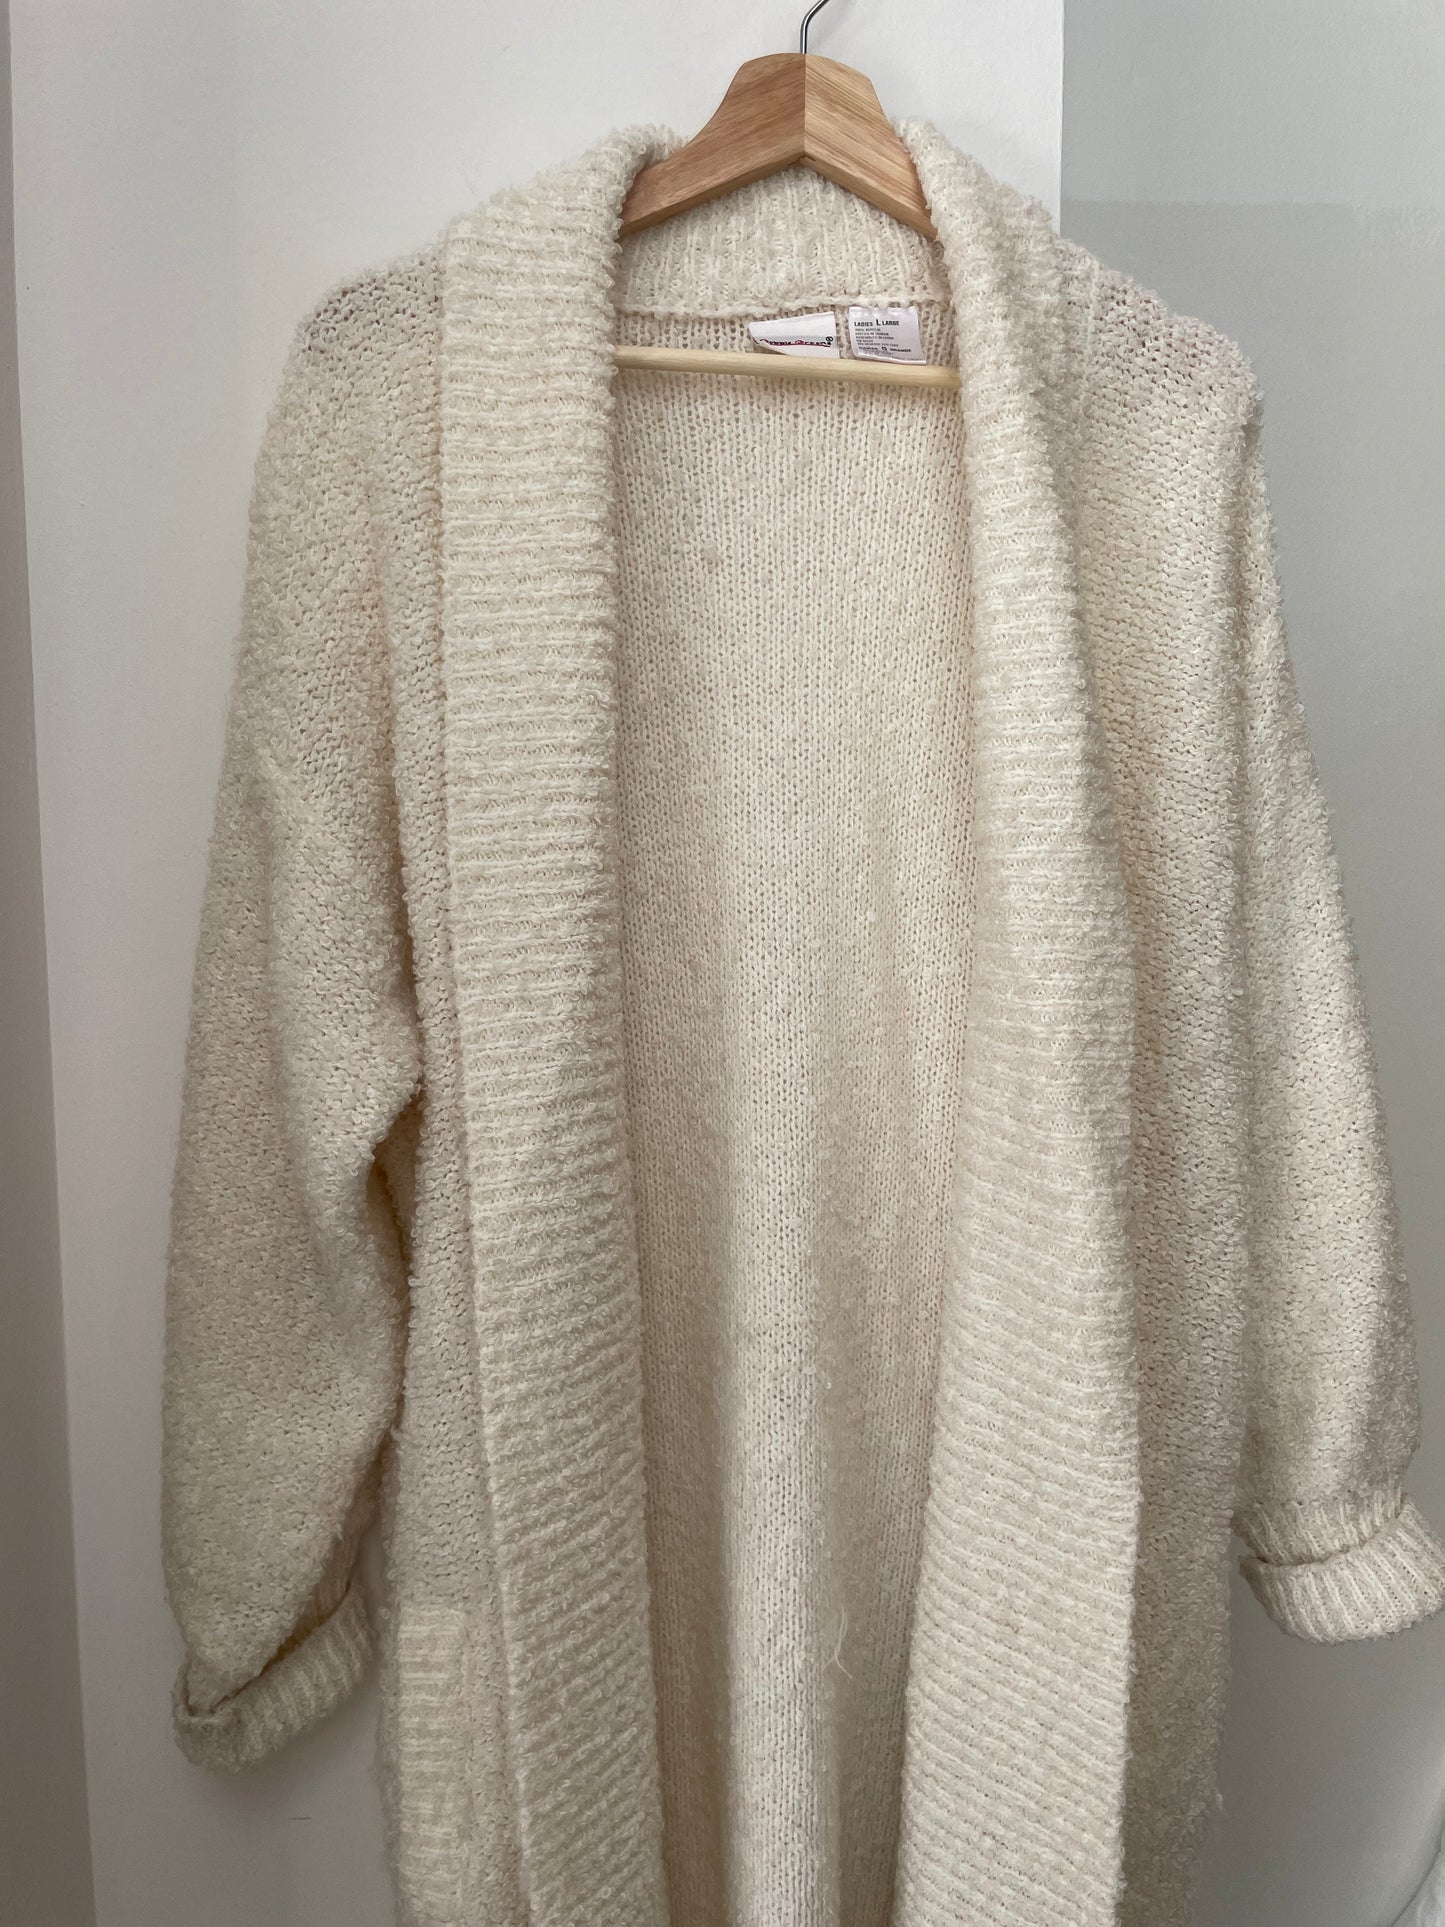 Ivory Boucle Knit Cardigan Sweater w/ Pockets | Large-XLarge